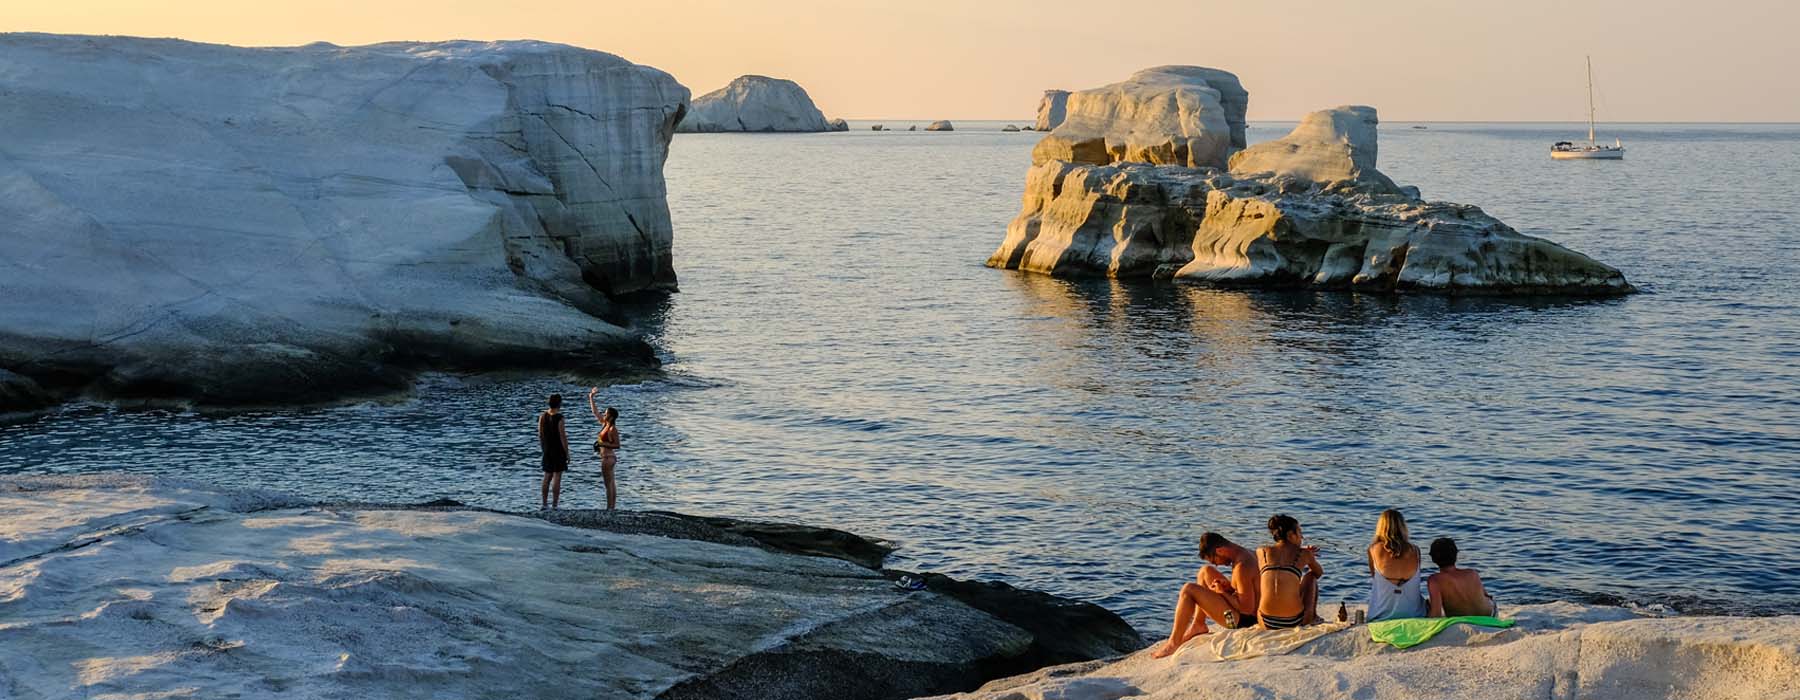 Greece<br class="hidden-md hidden-lg" /> Beach Holidays